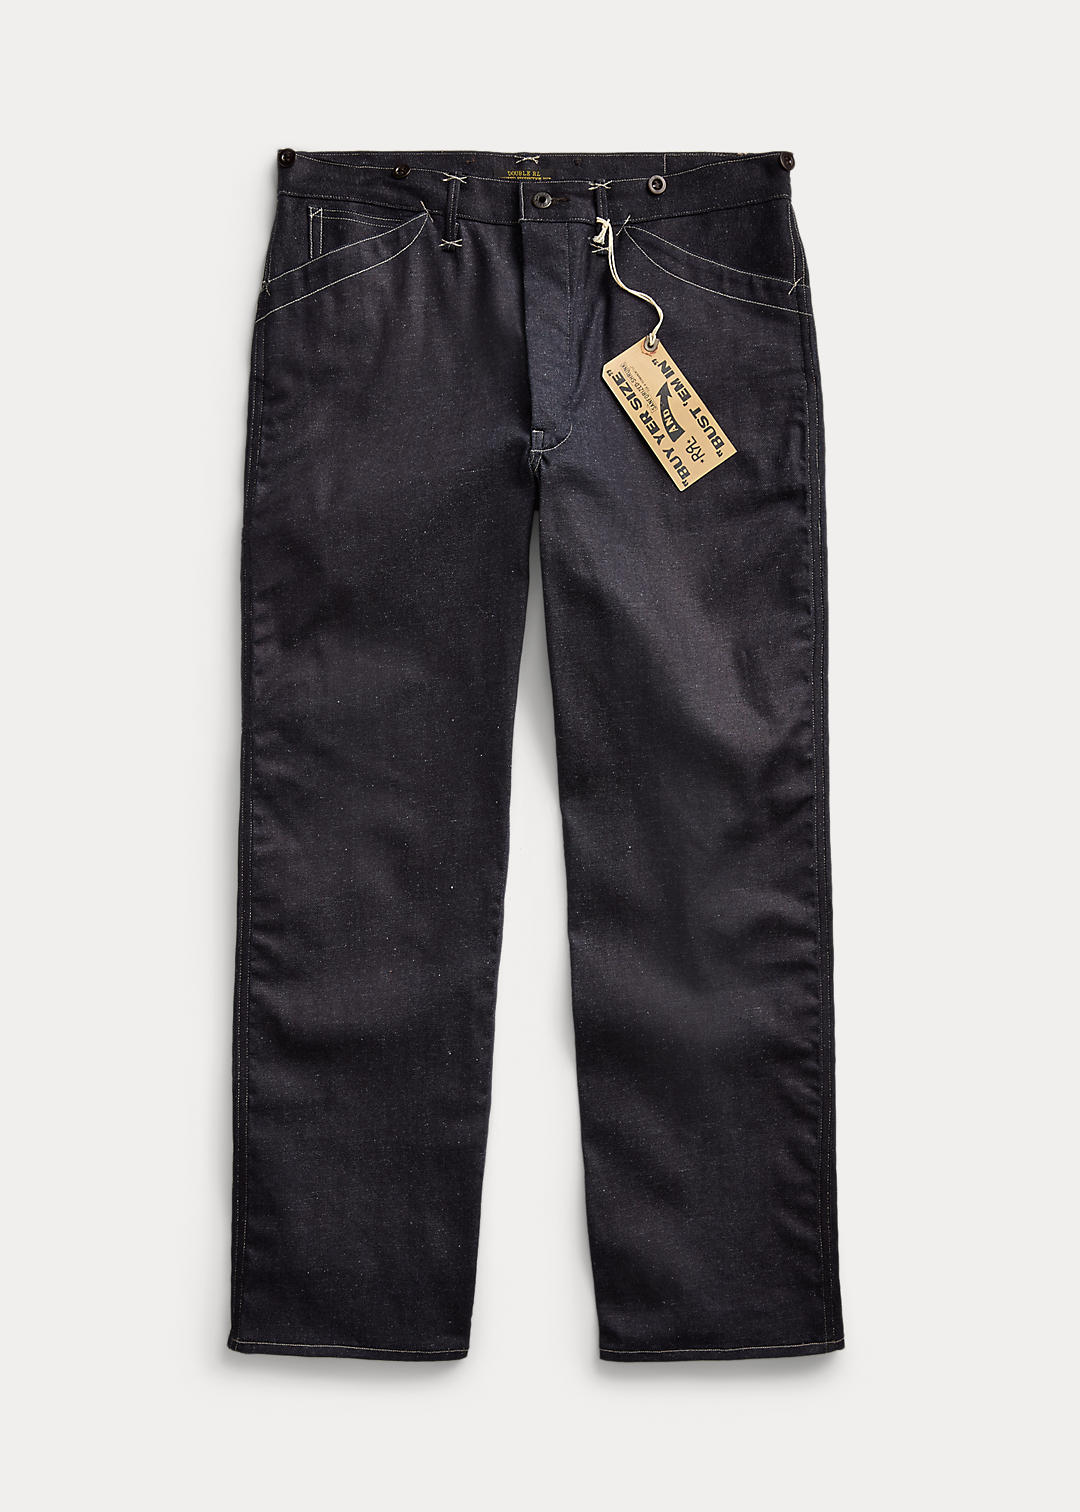 Limited Edition Vintage 5 Pocket Jean